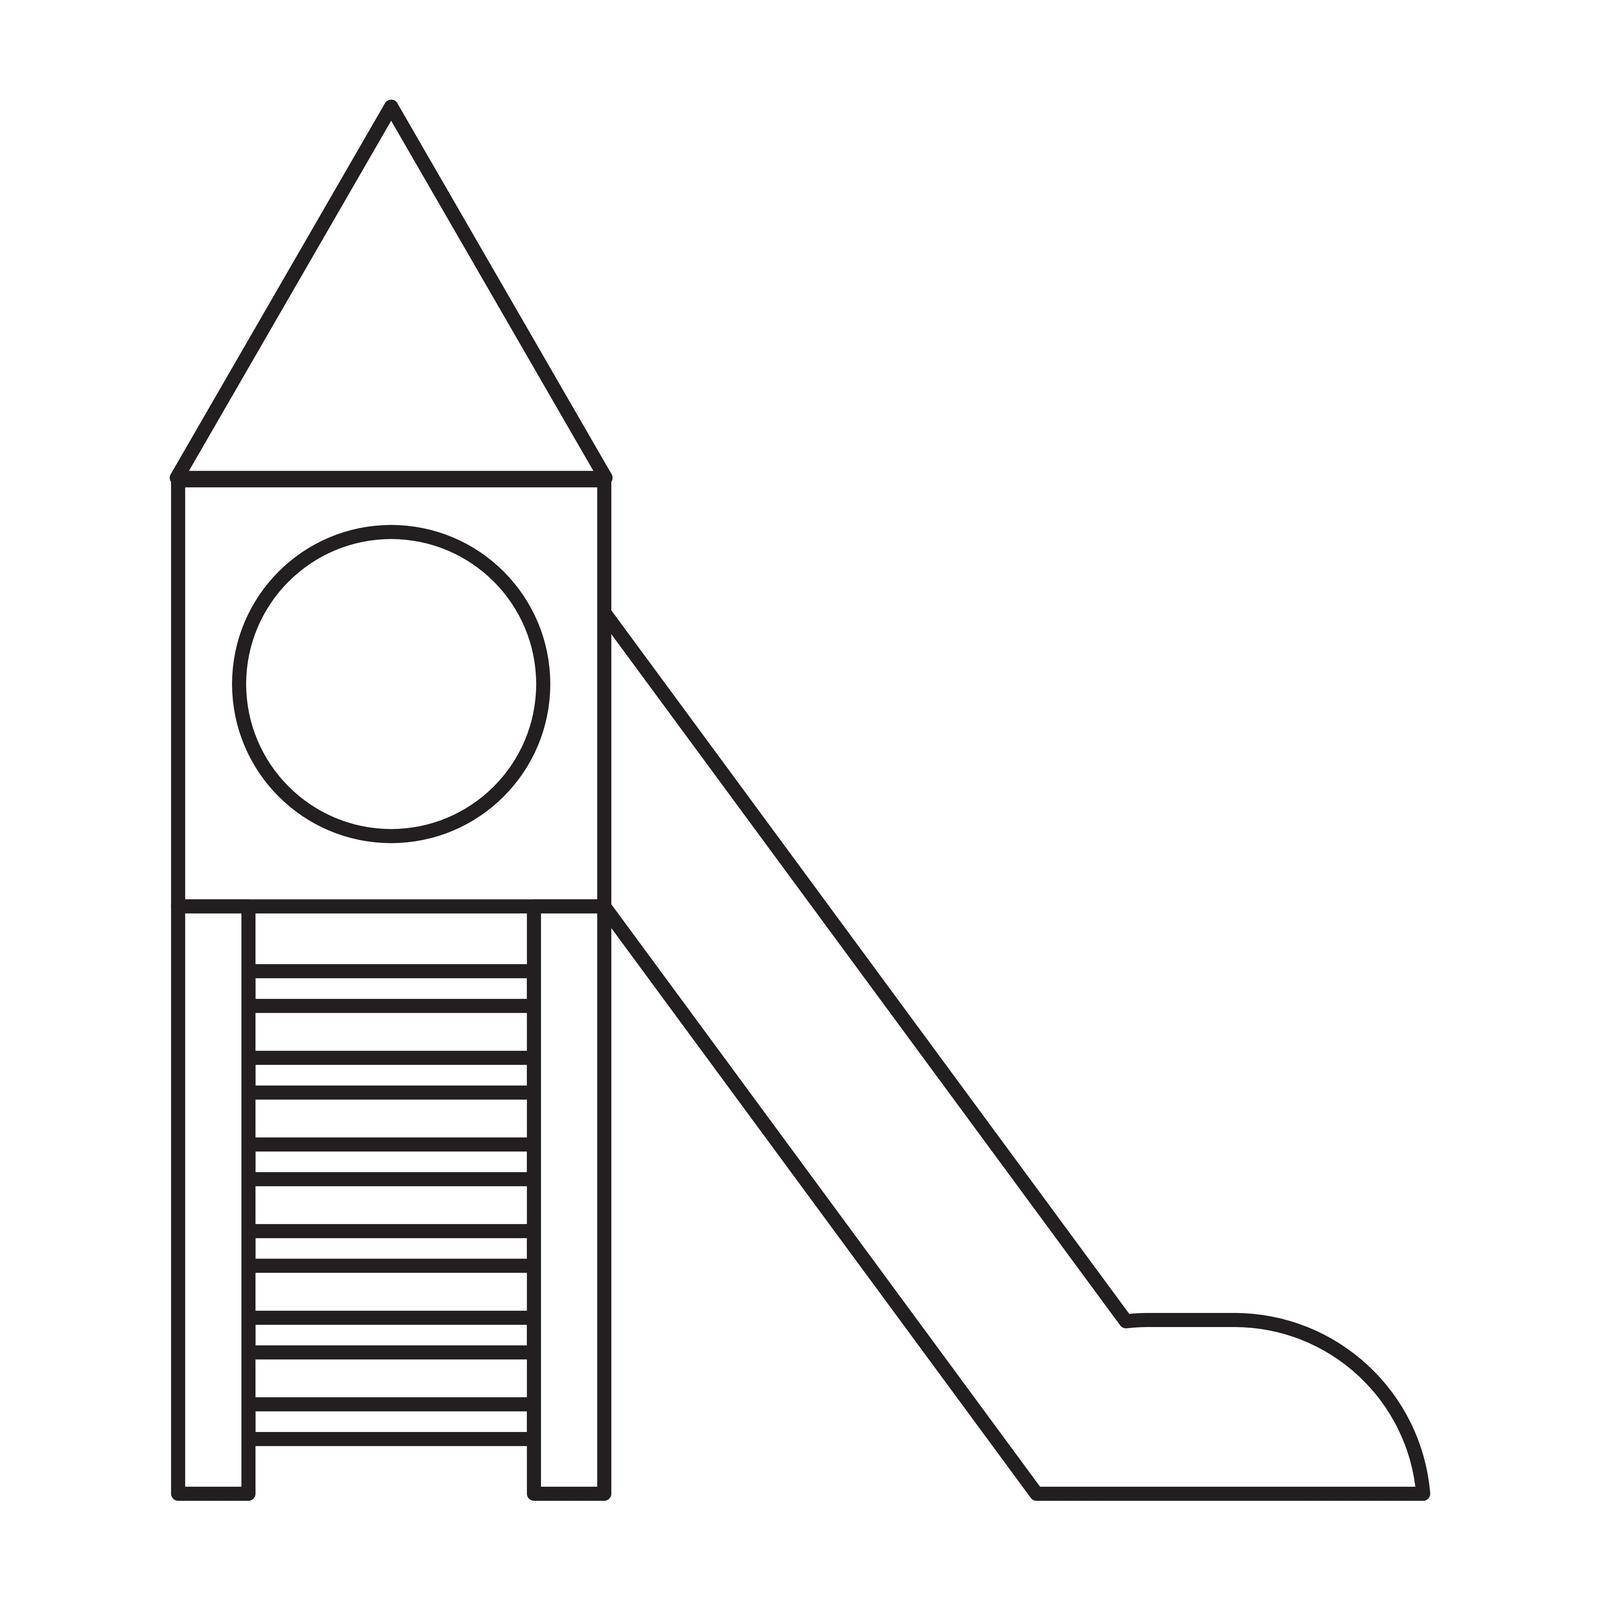 playground slide icon. Outline vector symbol isolated on white background by wektorygrafika